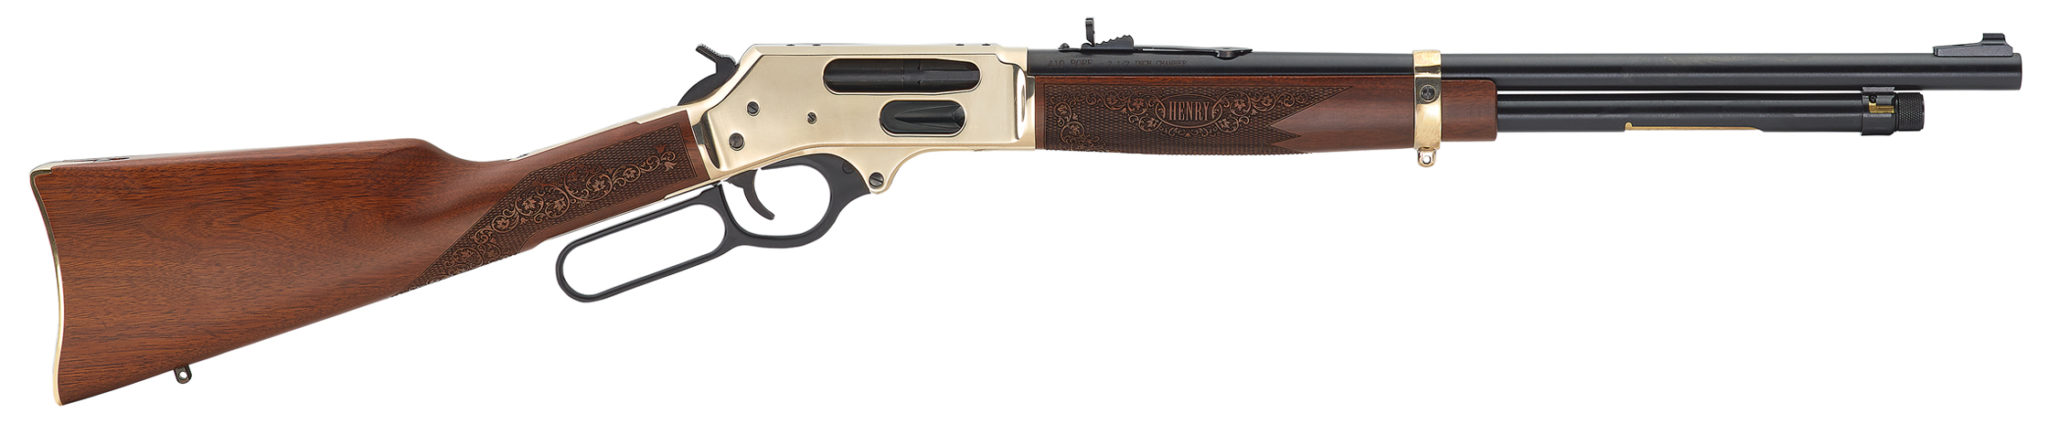 Buy Henry Side Gate Lever Action Shotgun .410 Bore Online